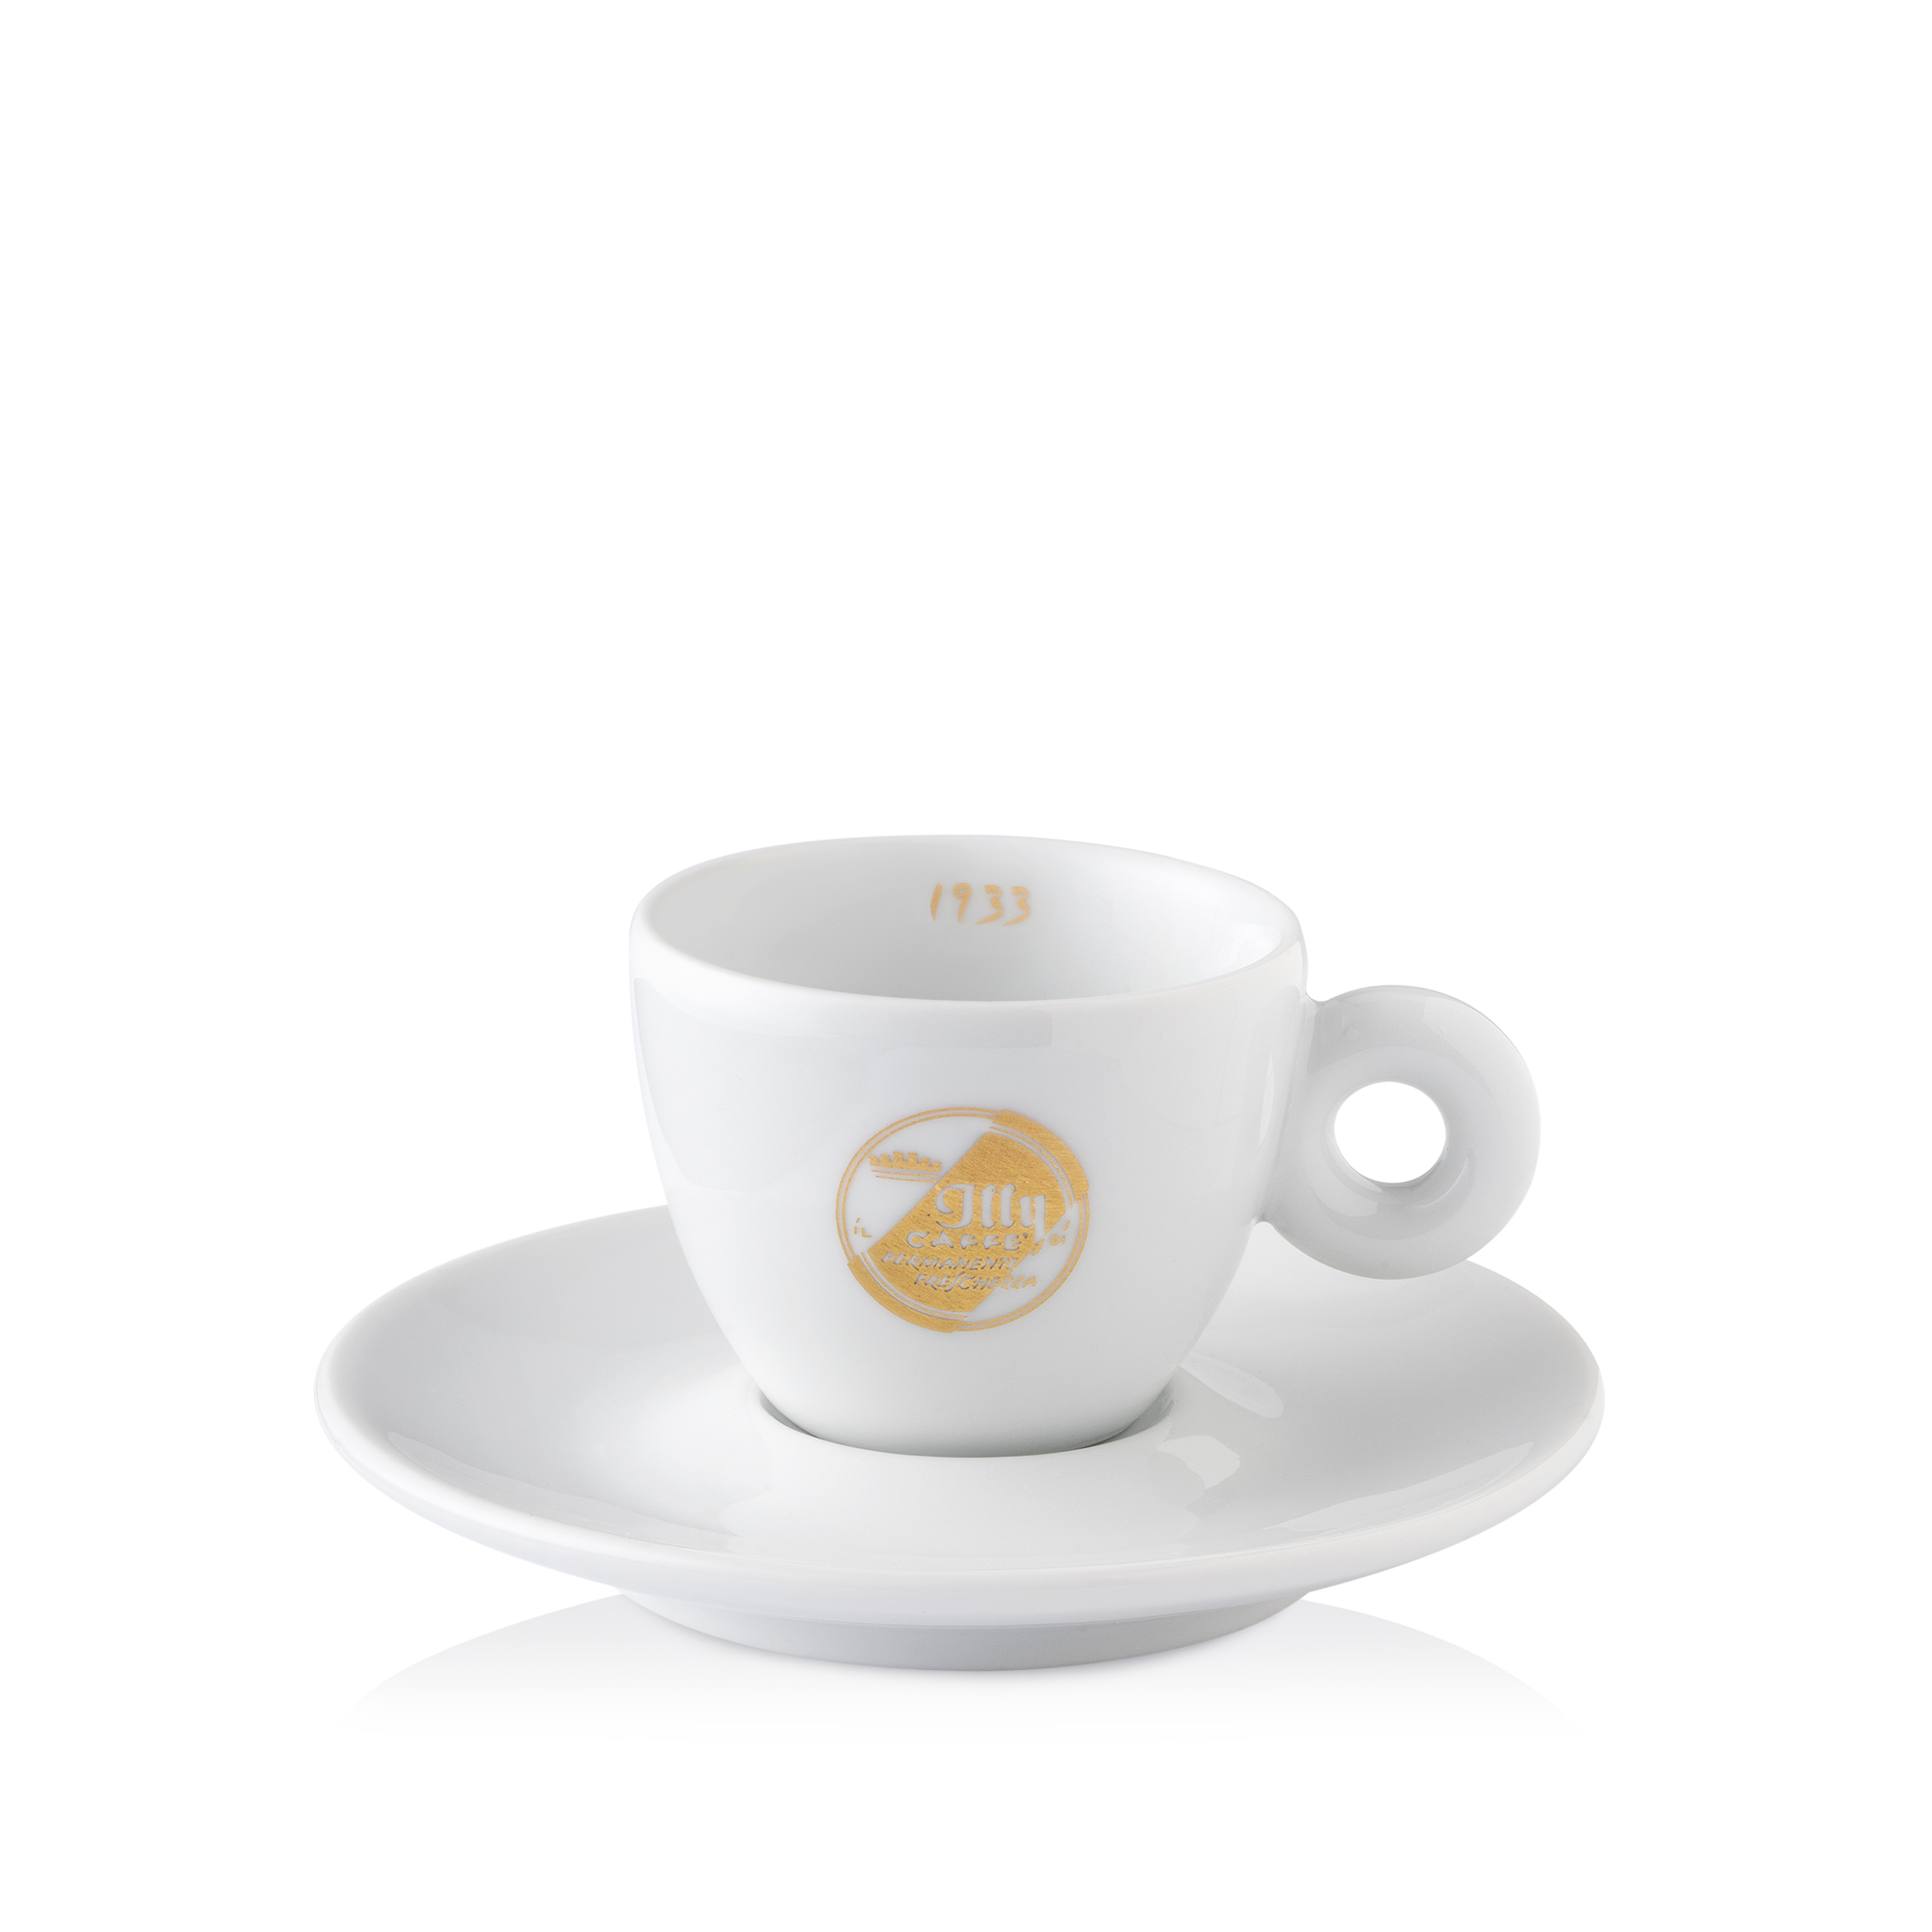 90-jarig jubileum: blik Classico koffie met 6 espressokopjes